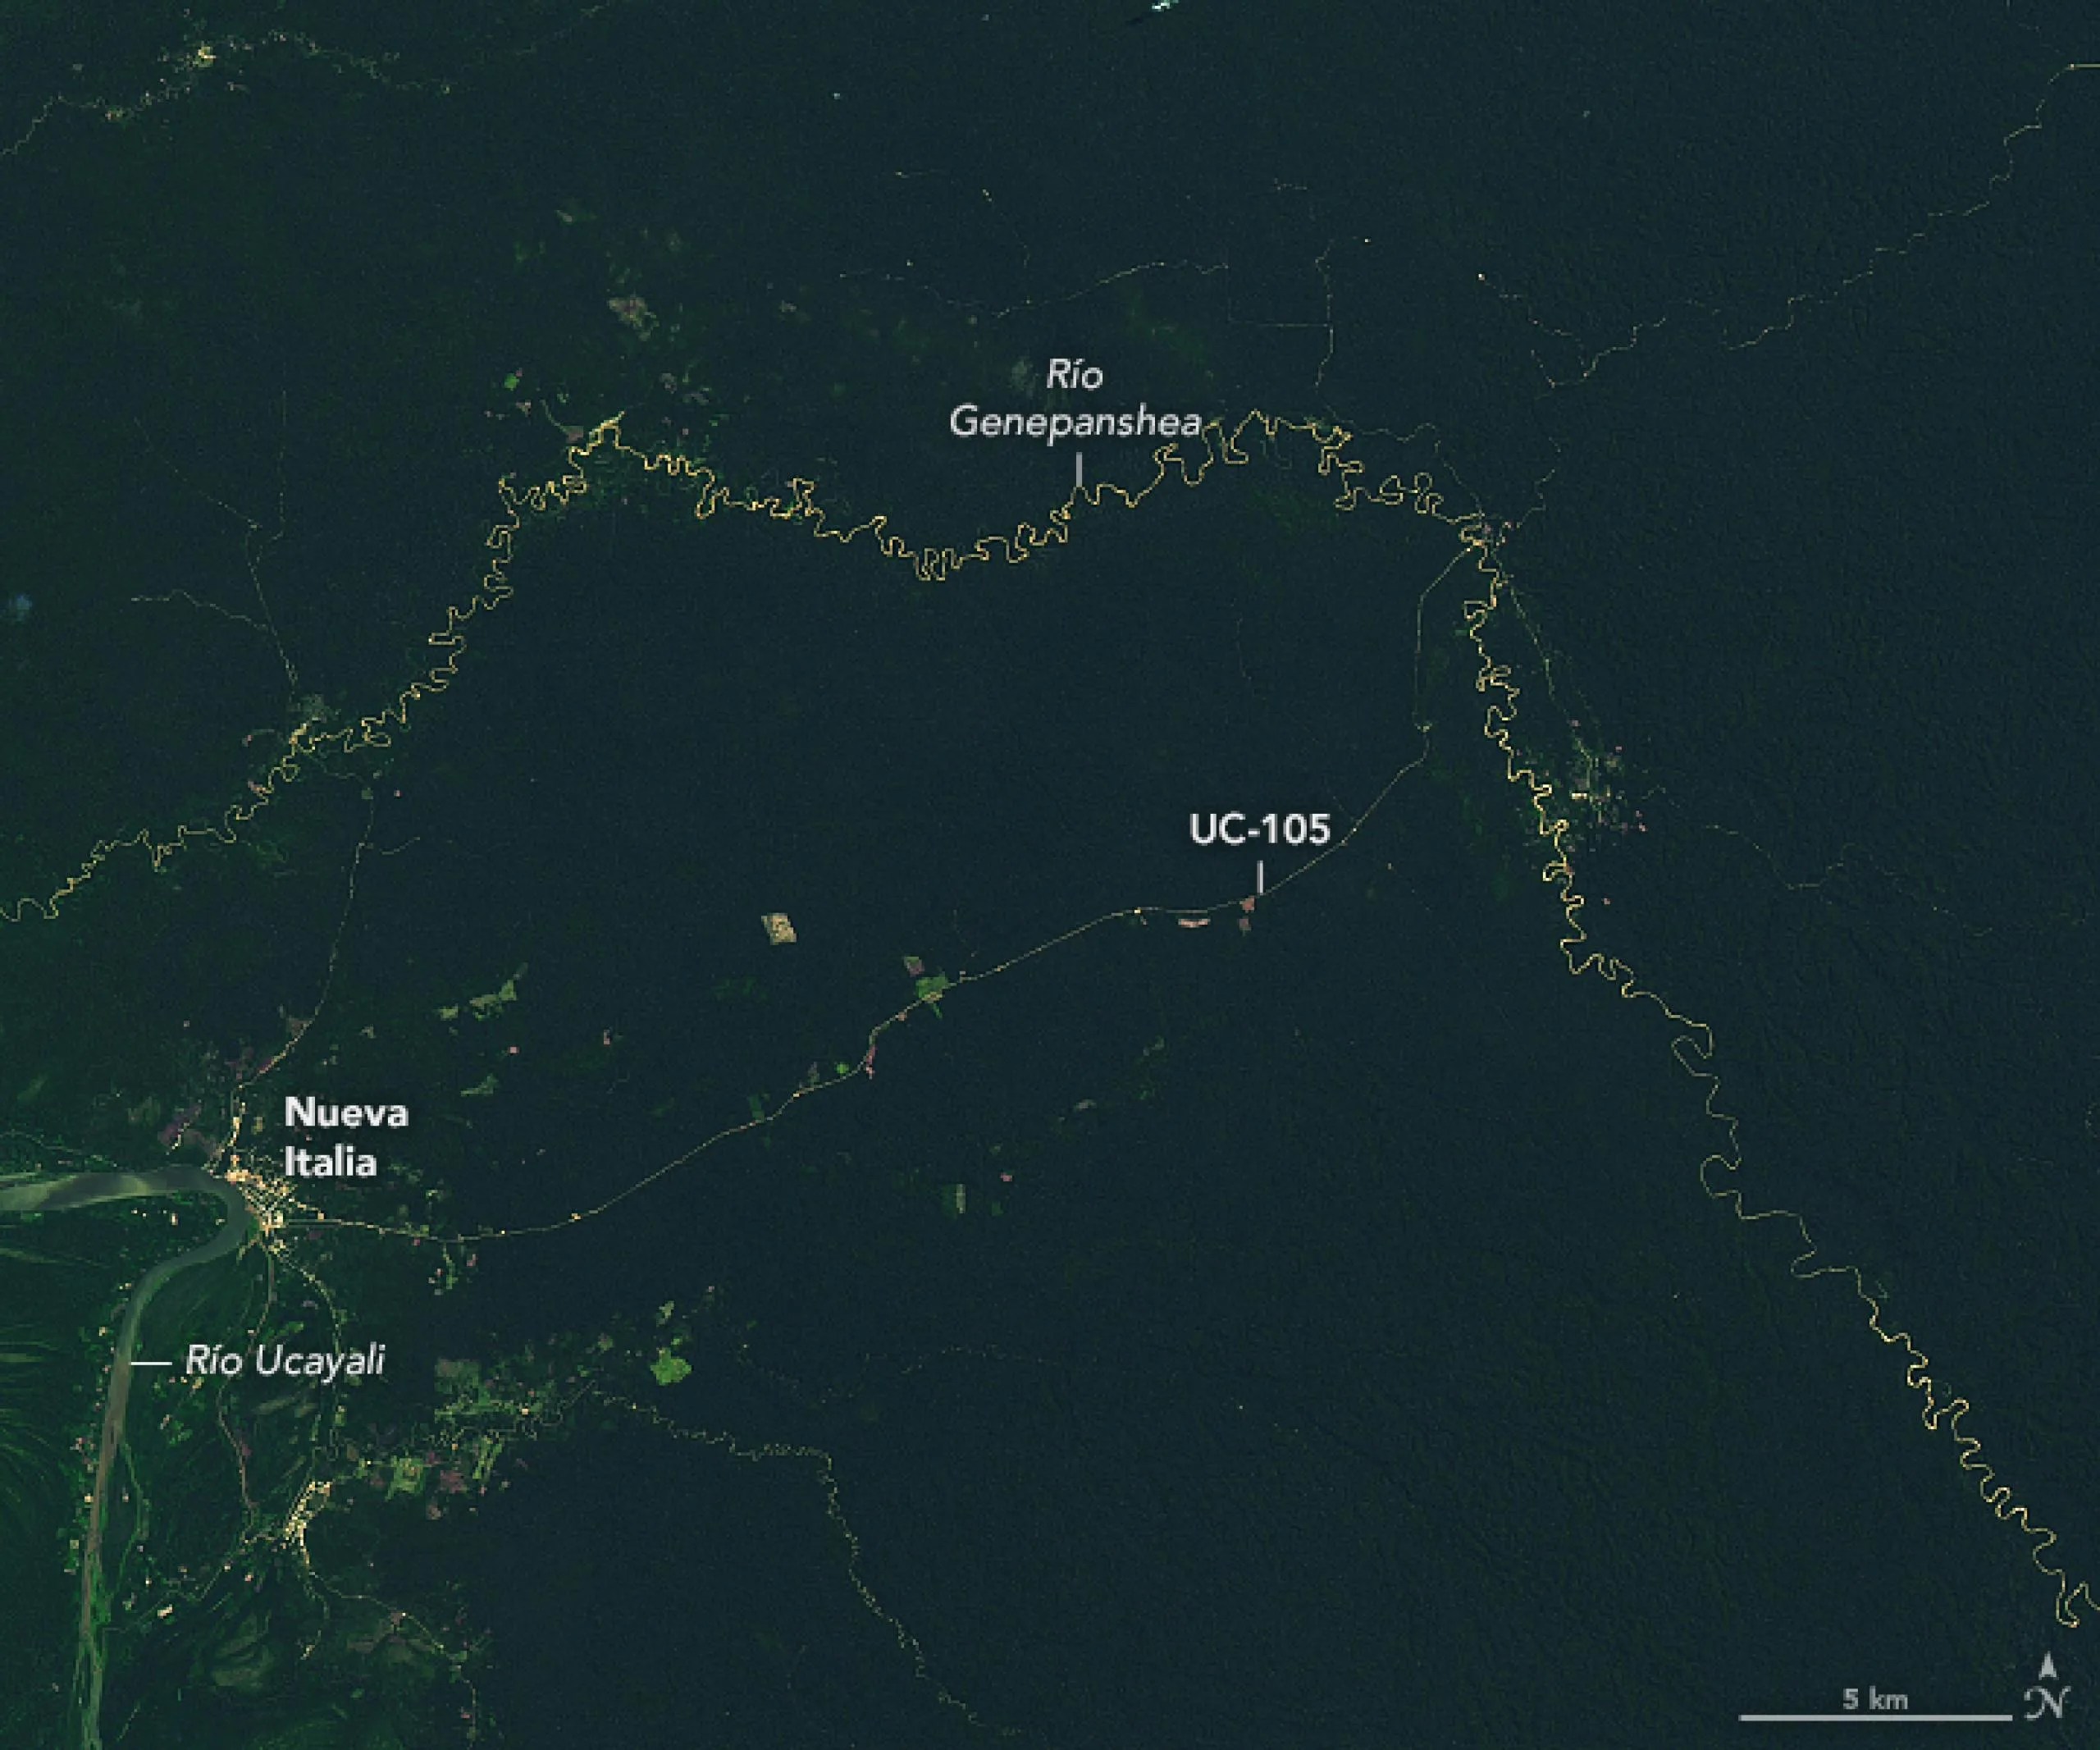 Esta imagen satelital muestra la extensión del cambio entre los ríos Ucayali y Genepanshea en Perú. Fue obtenida por el Generador operacional de imágenes de tierra (OLI, por sus siglas en inglés) a bordo de Landsat 8, y muestra el área en 2017, cuando solo eran visibles el sendero y una cantidad modesta de deforestación.